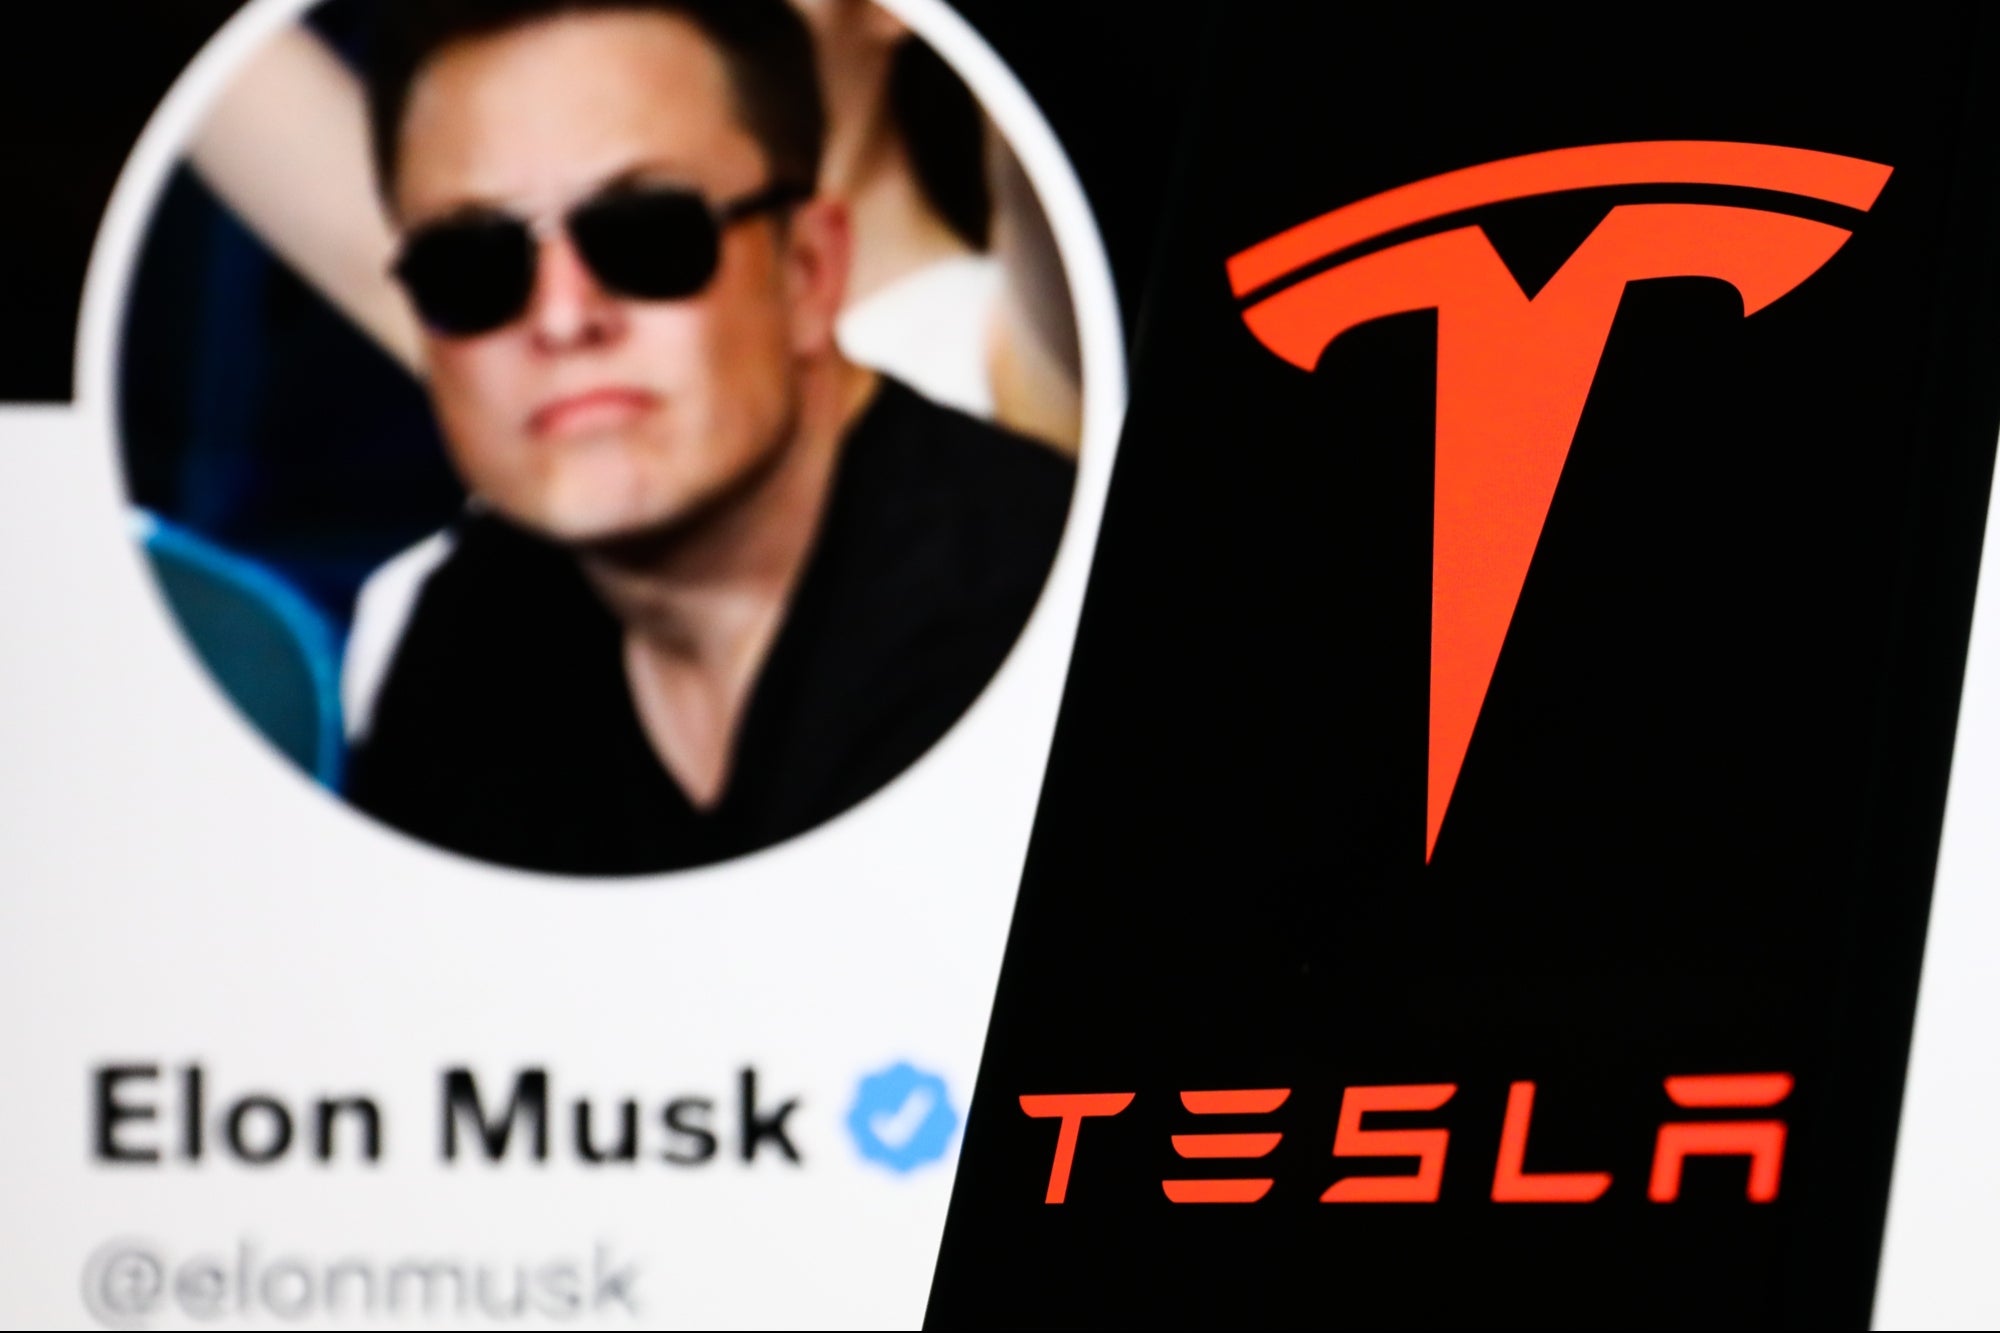 Chủ sở hữu của Twitter hiện đã bán số cổ phiếu Tesla trị giá 23 tỷ đô la trong năm nay, phần lớn sau khi Musk cam kết vào tháng 4 sẽ ngừng bán cổ phiếu để tài trợ cho thỏa thuận mua lại công ty truyền thông xã hội của mình. Ảnh: @AFP.